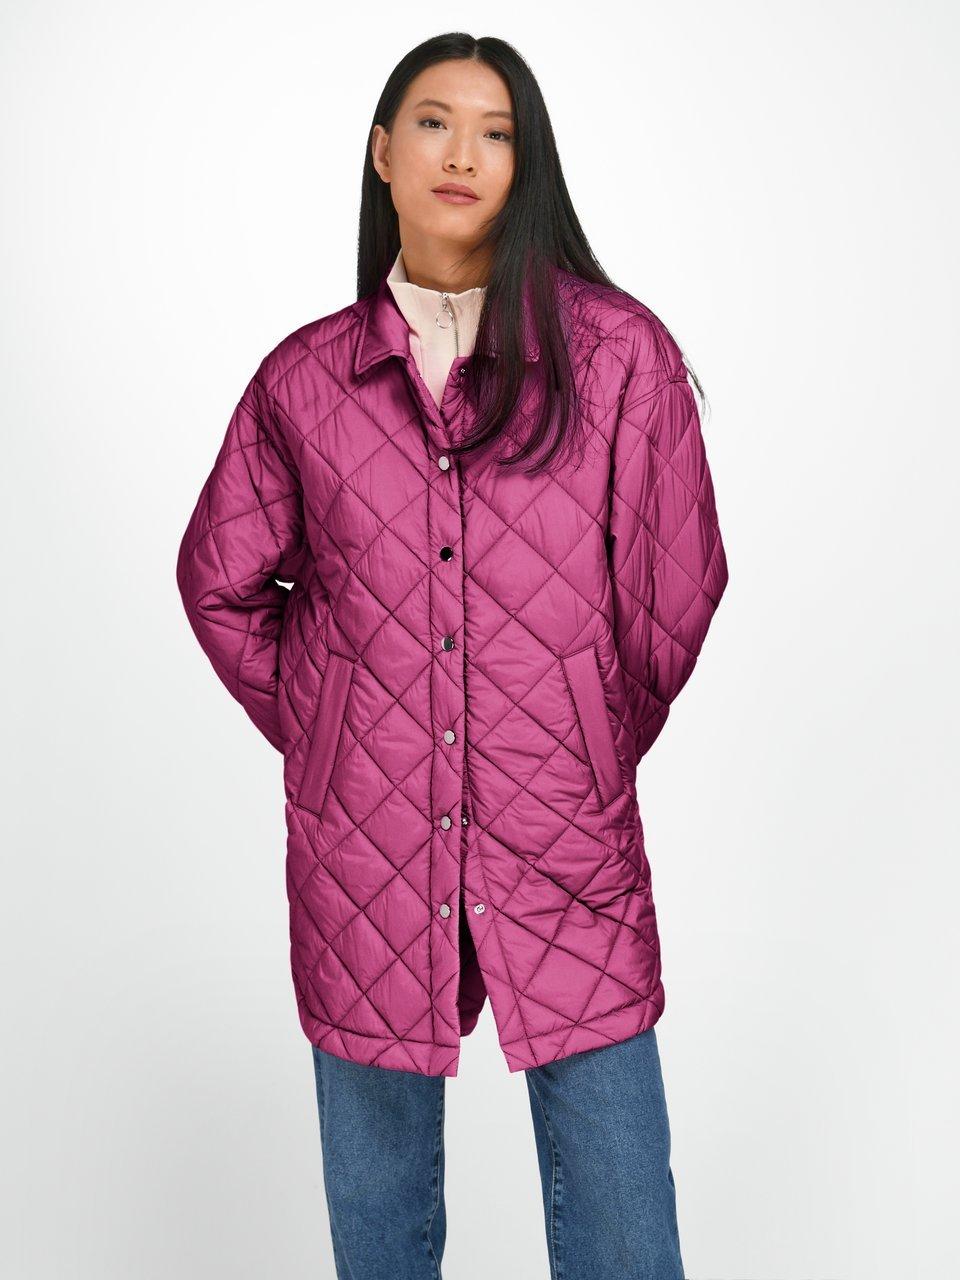 Proportional Majroe Forretningsmand Looxent - Quiltet jakke i oversized style - Pink